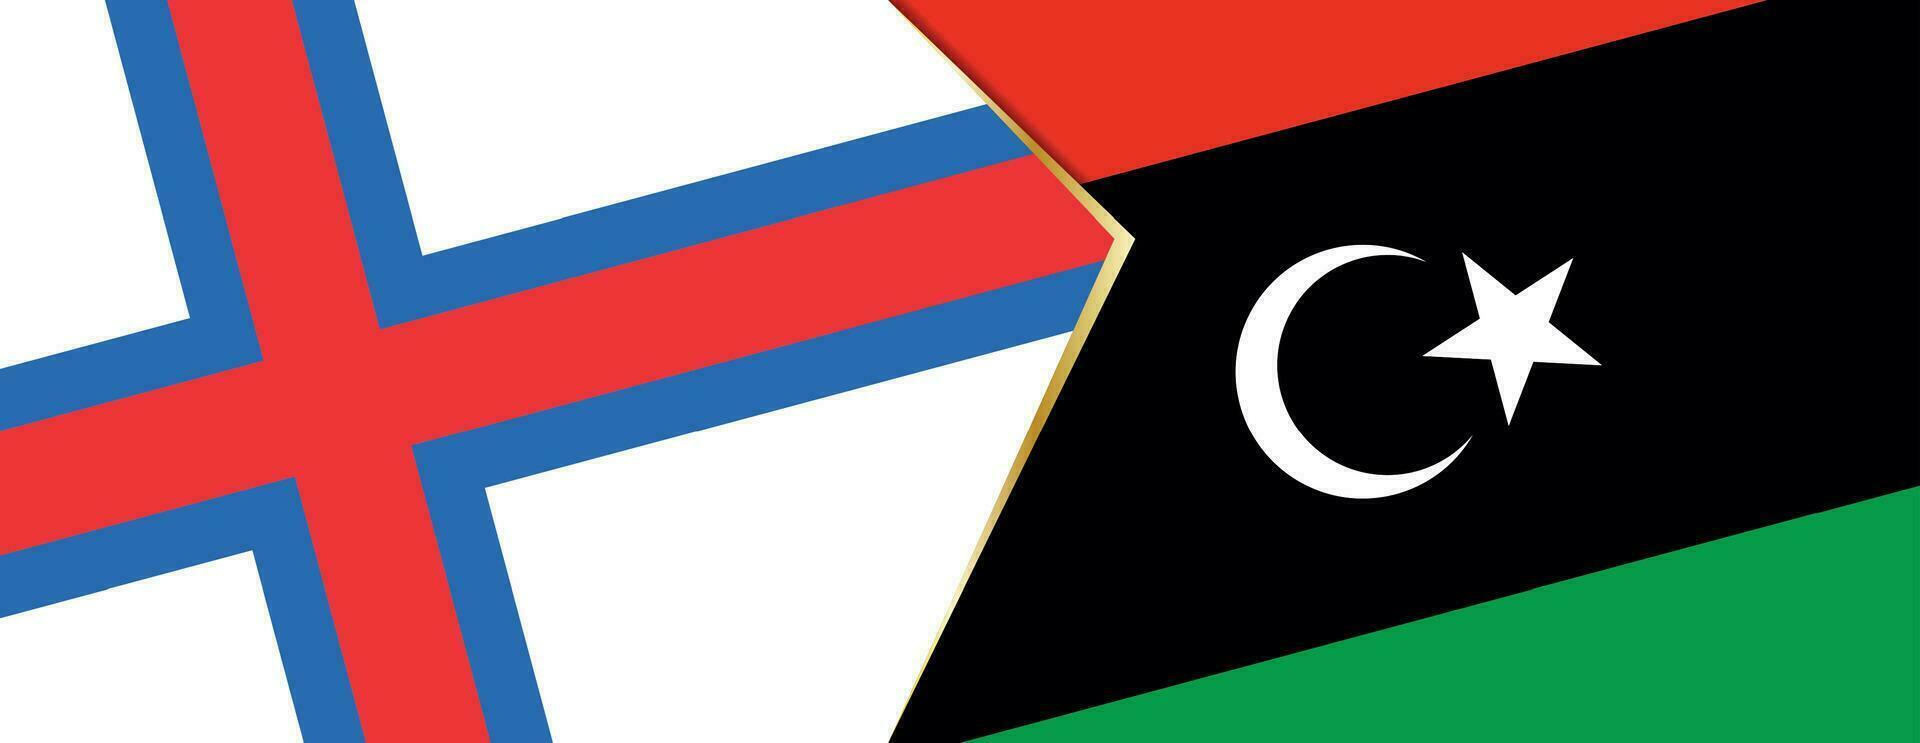 faroé ilhas e Líbia bandeiras, dois vetor bandeiras.